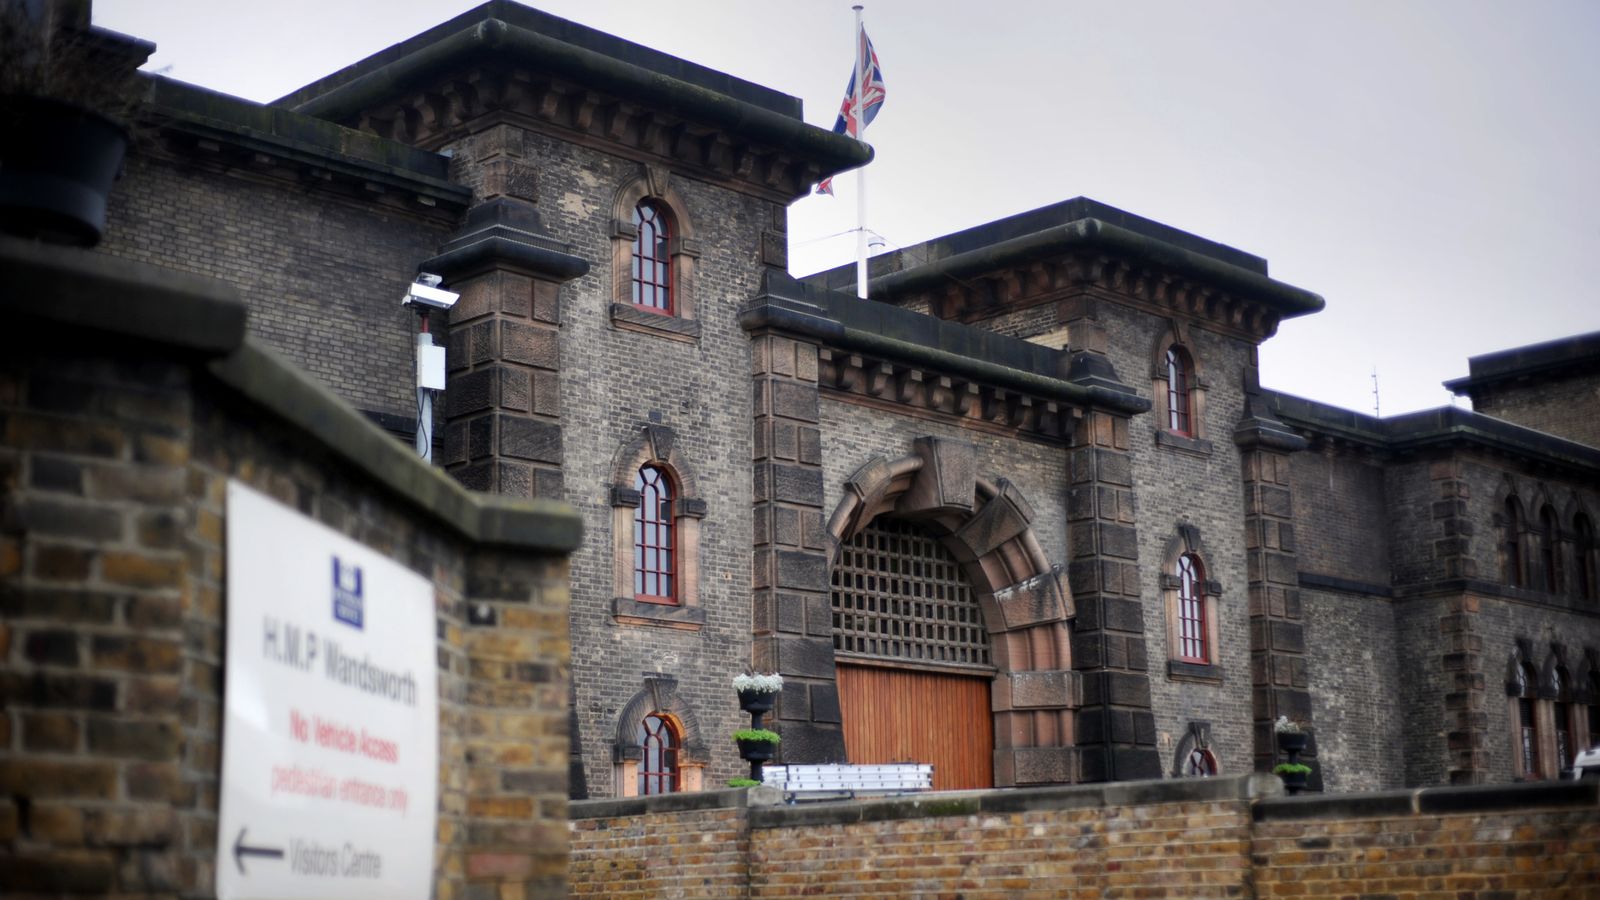 Затворът Wandsworth се нуждае от „спешно подобрение“ осем месеца след предполагаемото бягство на Даниел Халиф, казва пазач